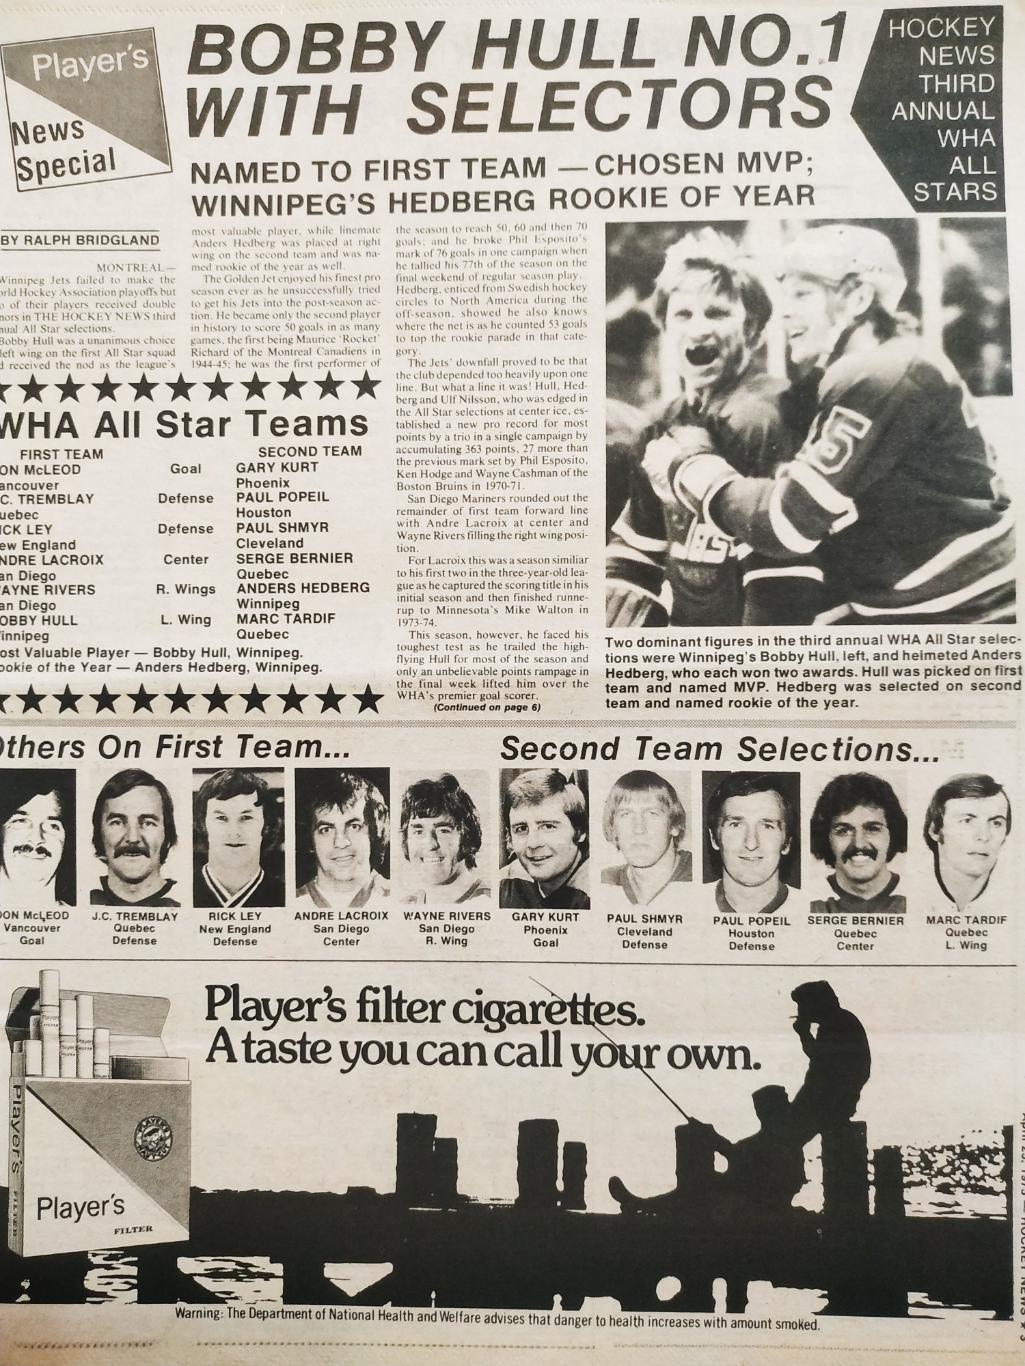 ХОККЕЙ ЖУРНАЛ ЕЖЕНЕДЕЛЬНИК НХЛ НОВОСТИ ХОККЕЯ APR.25 1975 NHL THE HOCKEY NEWS 2